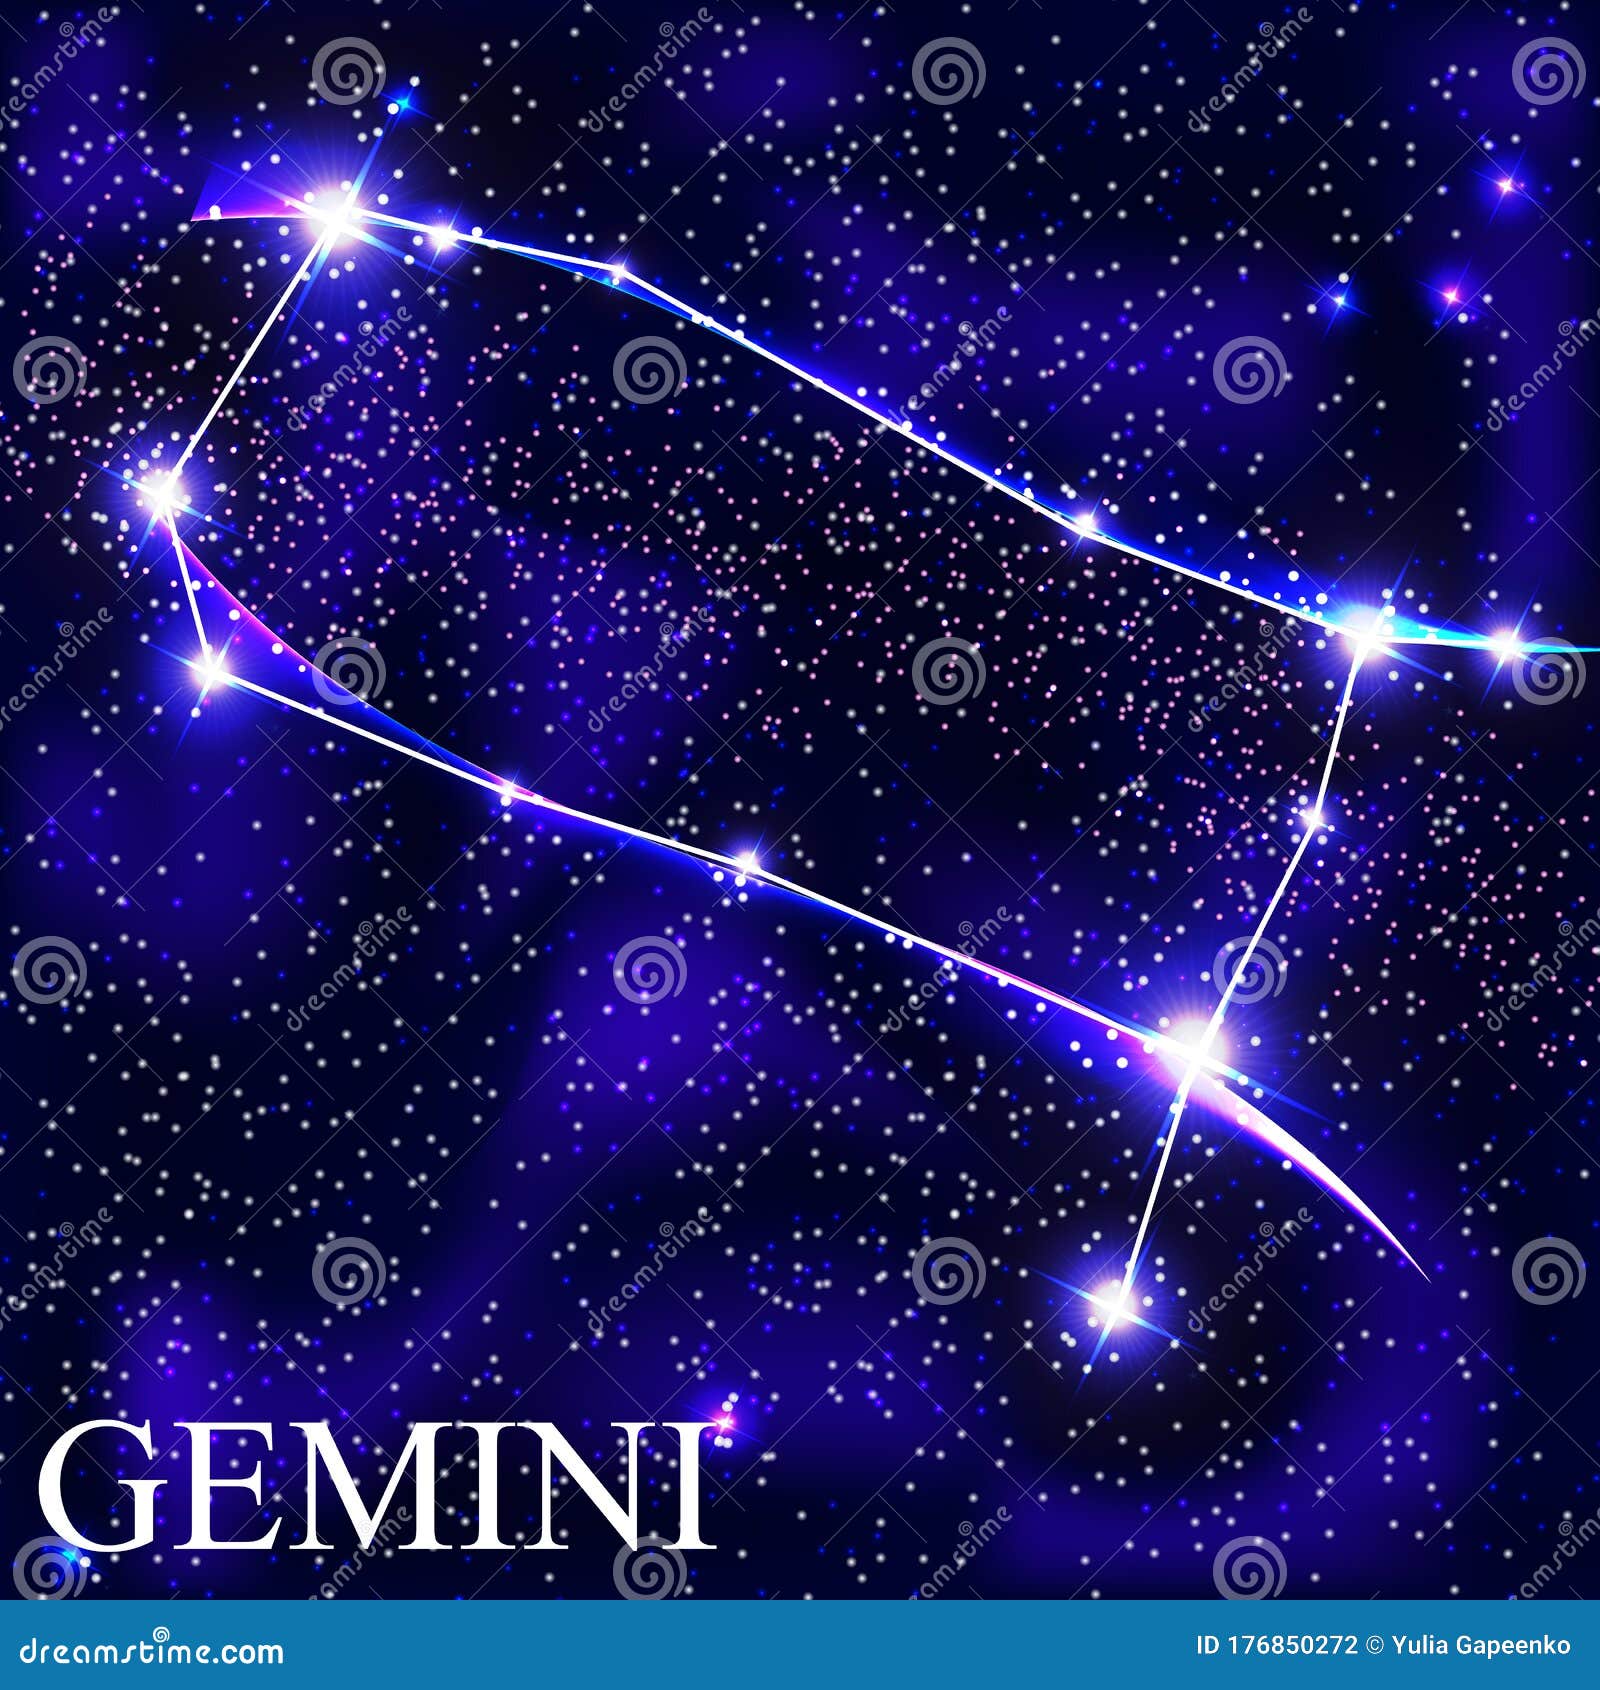 Ist Gemini das schönste Zeichen?